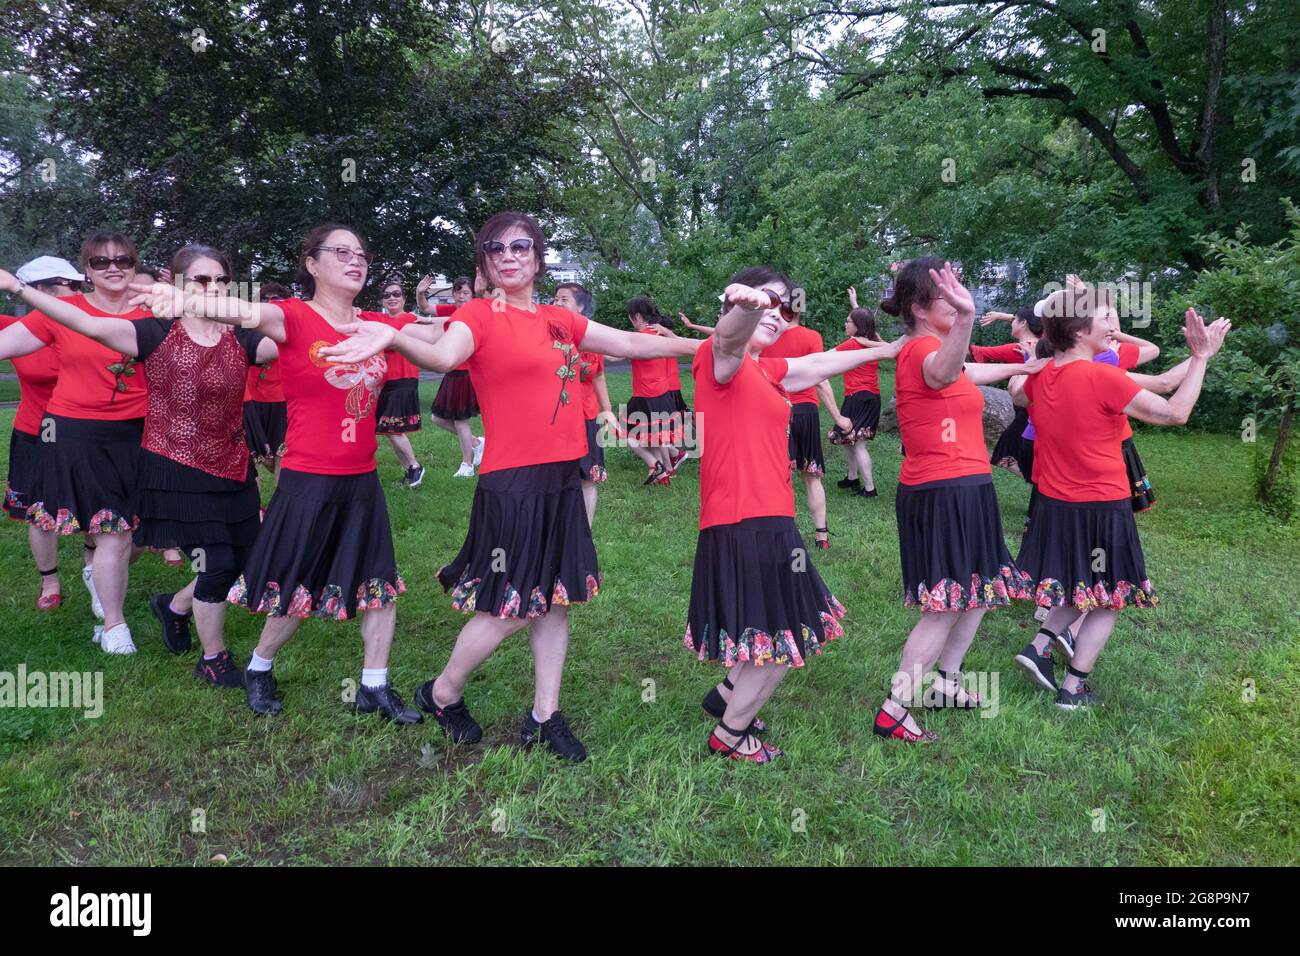 Un jour, ils se sont réunis pour des photos de groupe, une troupe asiatique américaine de femmes d'âge moyen dansant et faisant des gestes pour les caméras. À Queens, New York. Banque D'Images